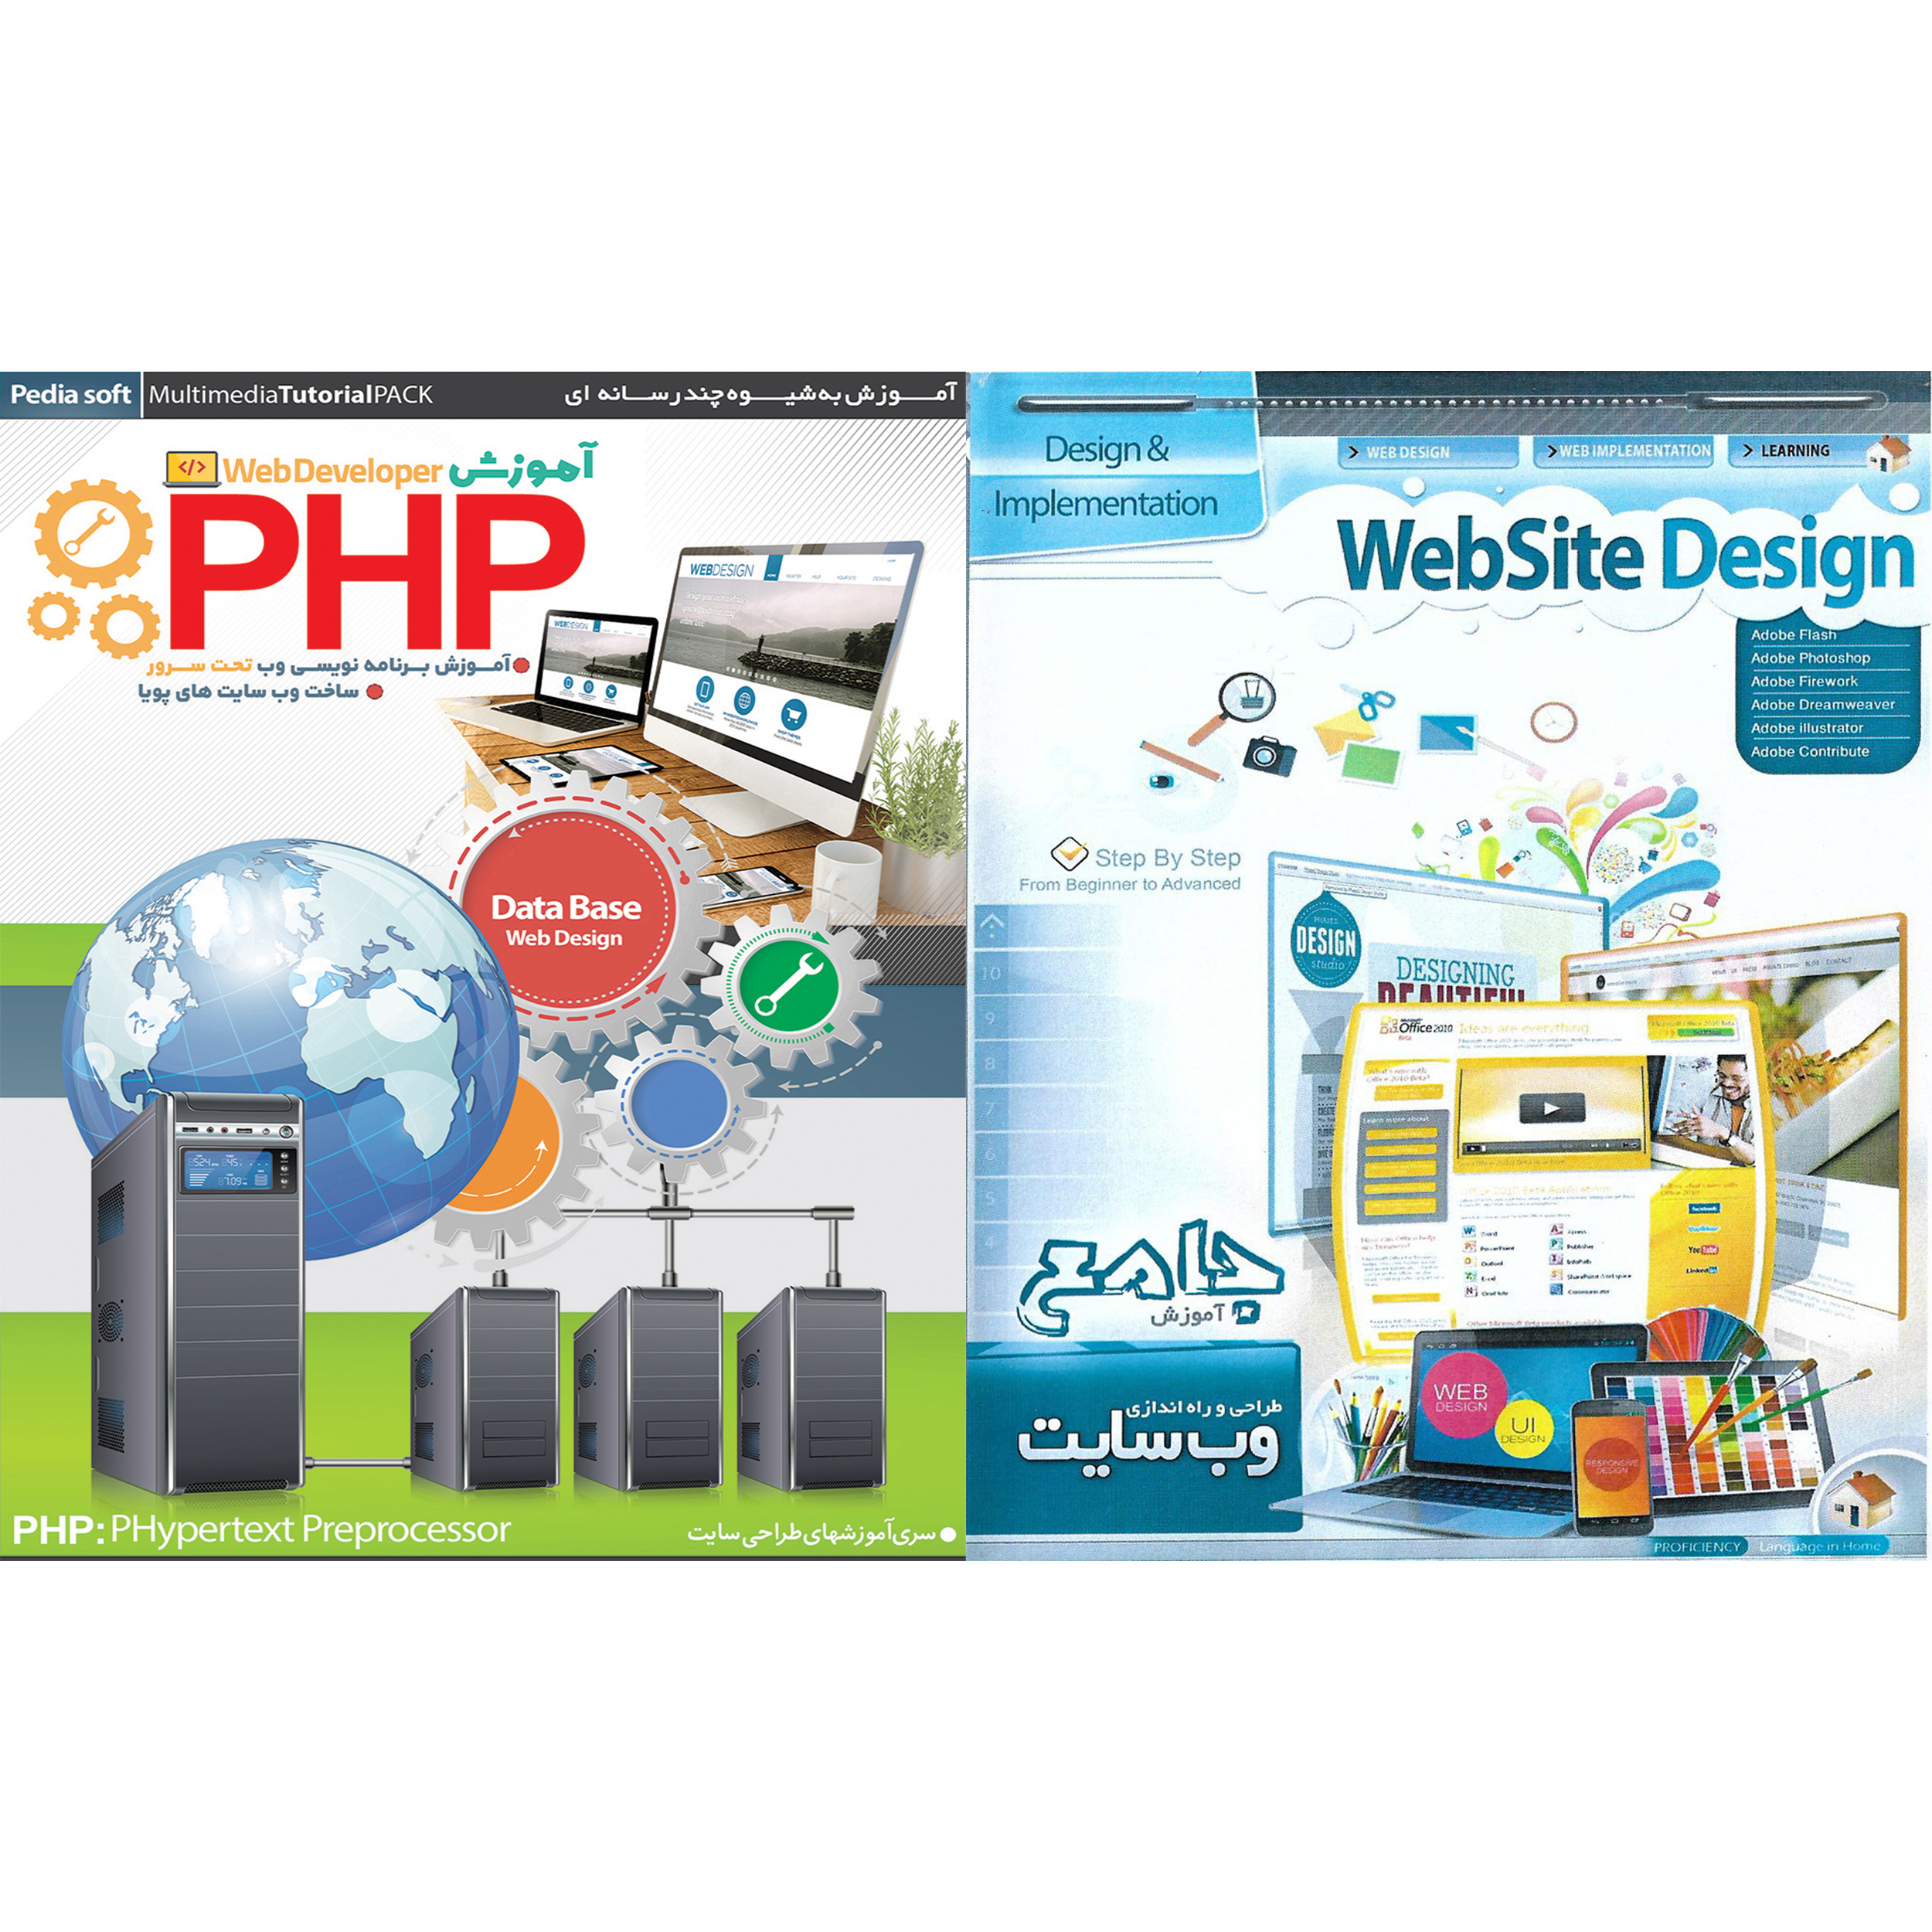 نرم افزار آموزش طراحی و راه اندازی وب سایت نشر پانا به همراه نرم افزار آموزش PHP نشر پدیا سافت